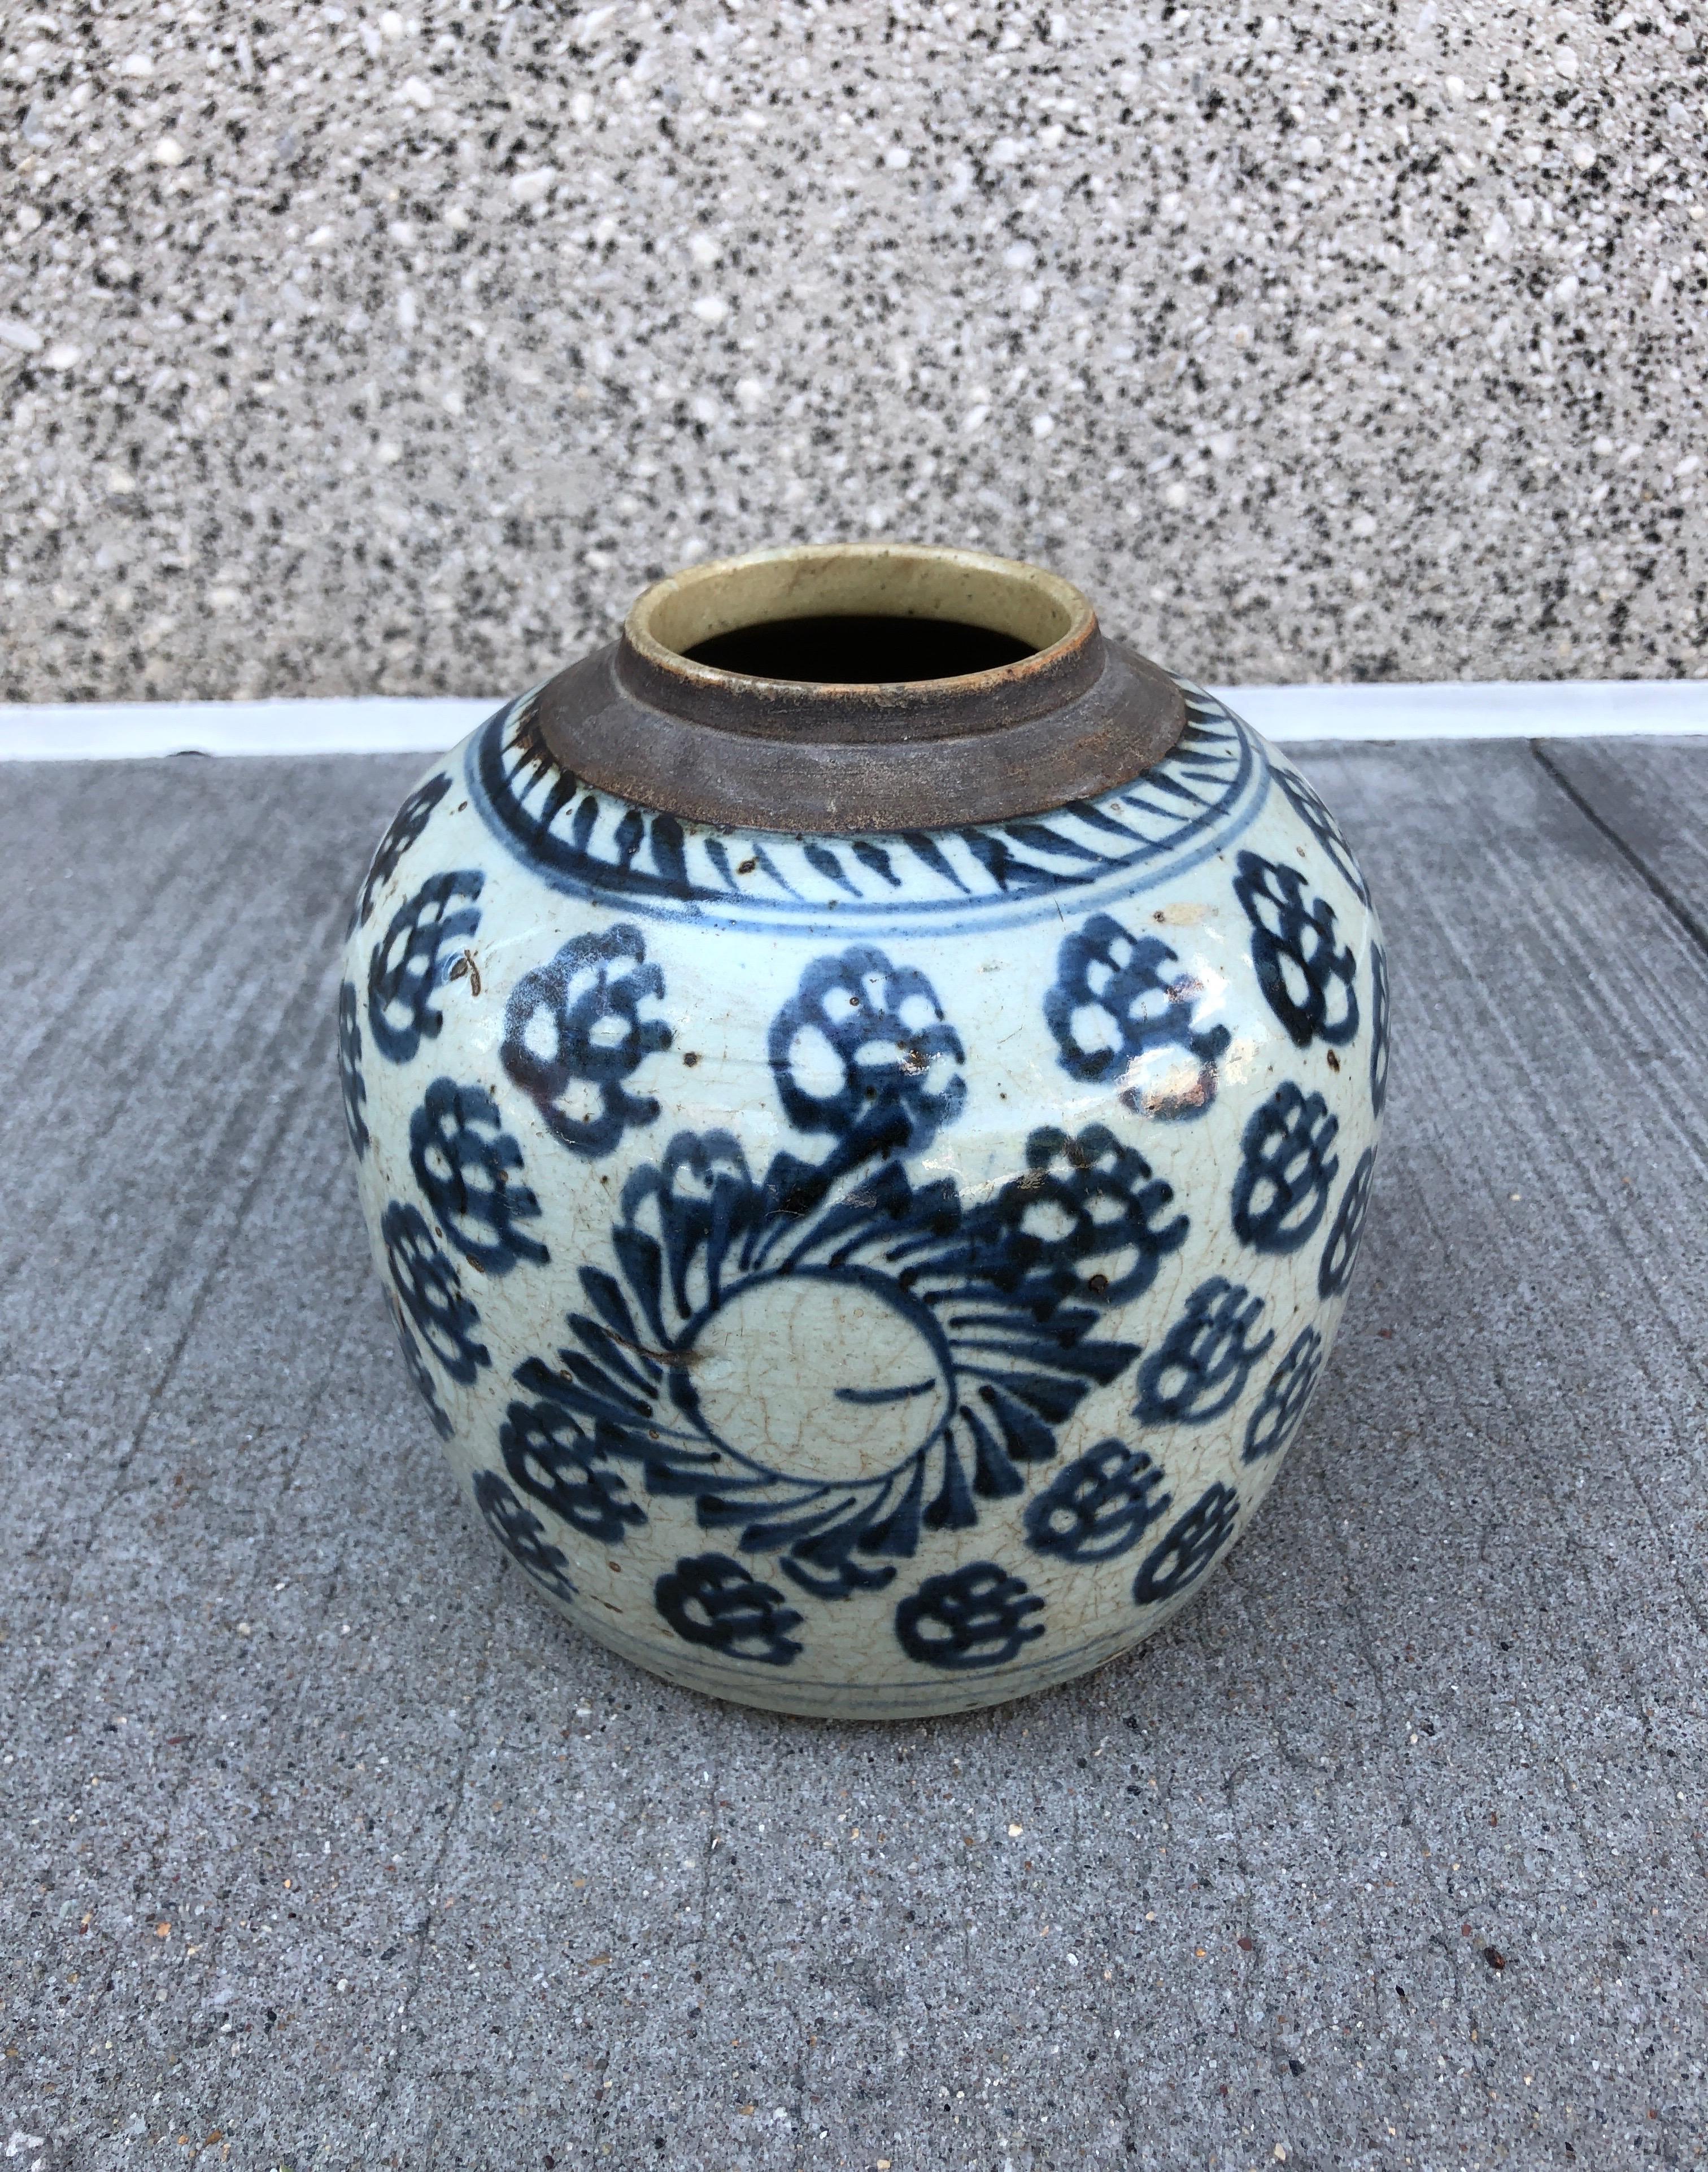 Une jarre classique en porcelaine bleue et blanche du 19e siècle, magnifiquement peinte et parfaitement formée. Province de Shanxi, C.I.C., vers 1880 ou avant.